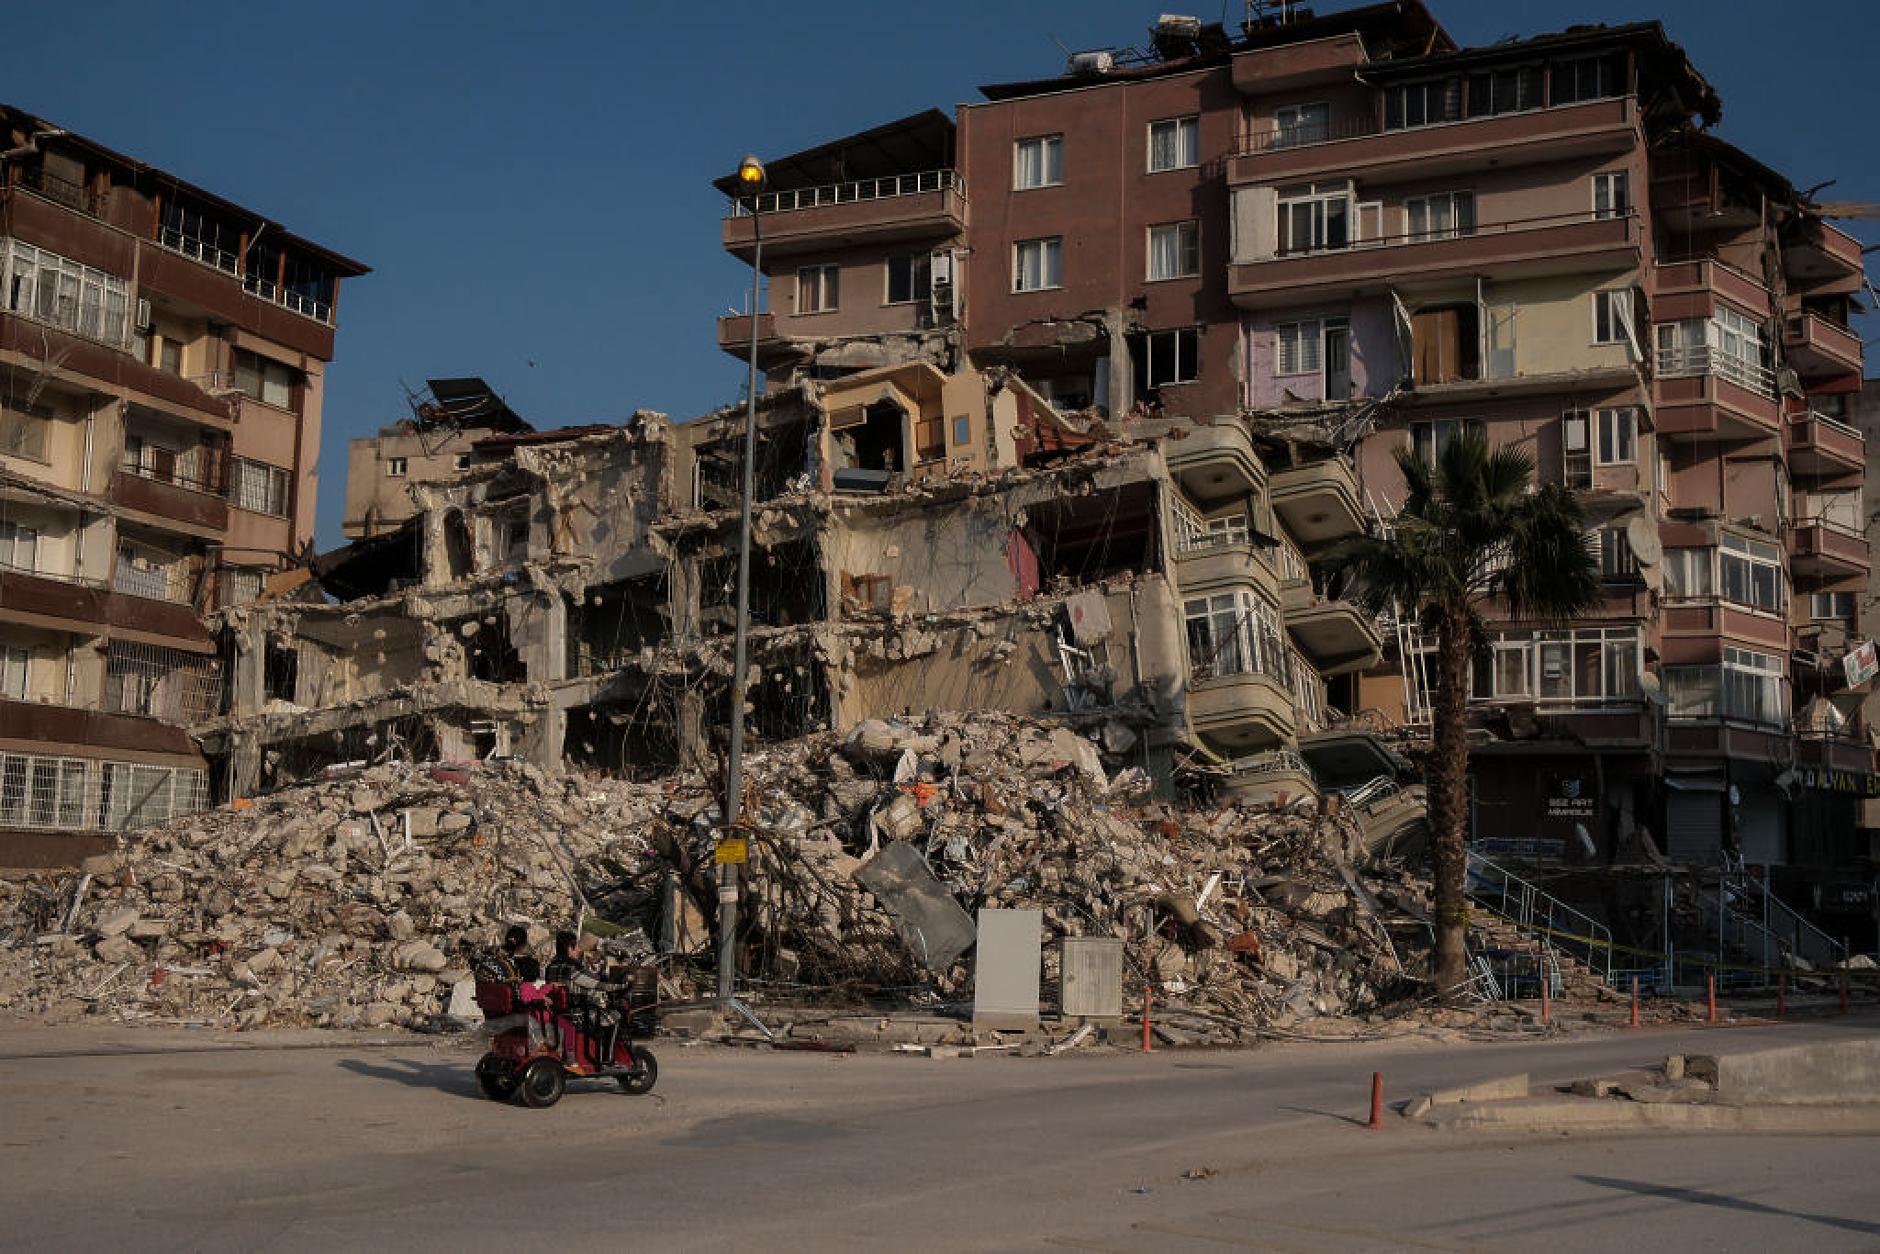 Близо 4000 сгради в Адана ще бъдат разрушени